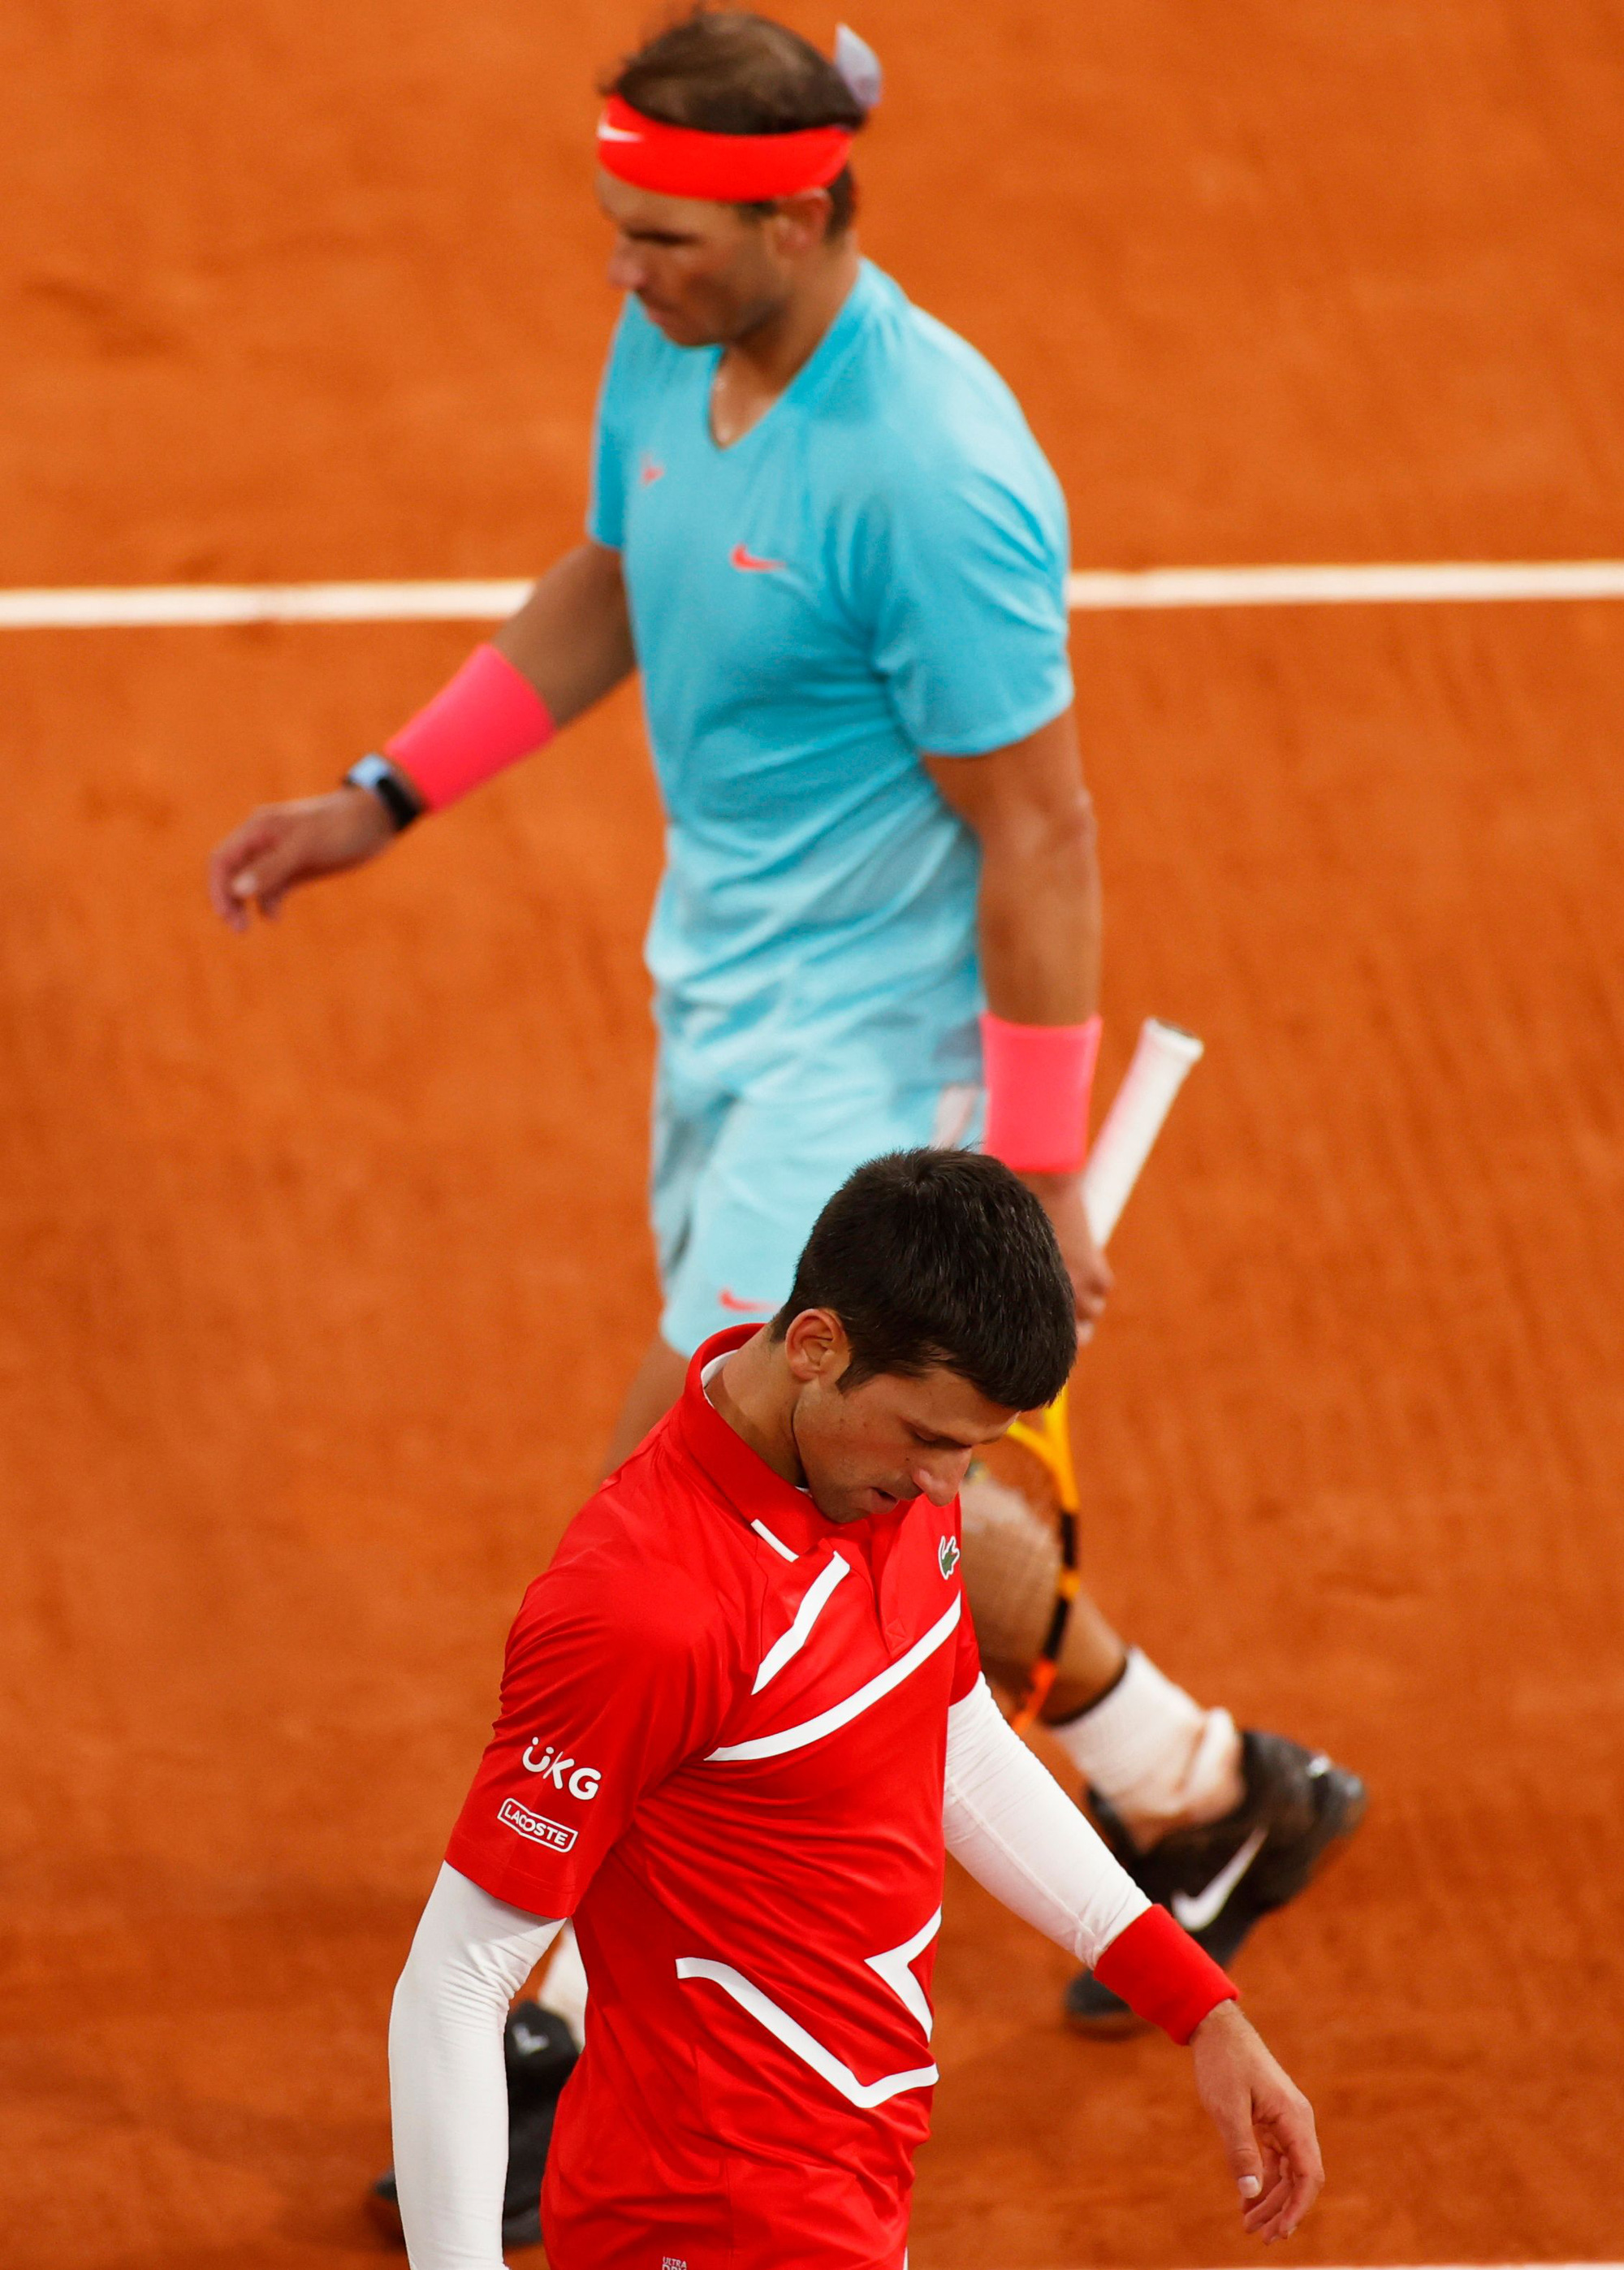 Vô địch Roland Garros 2020, Nadal san bằng kỷ lục Grand Slam của Federer - Ảnh 5.